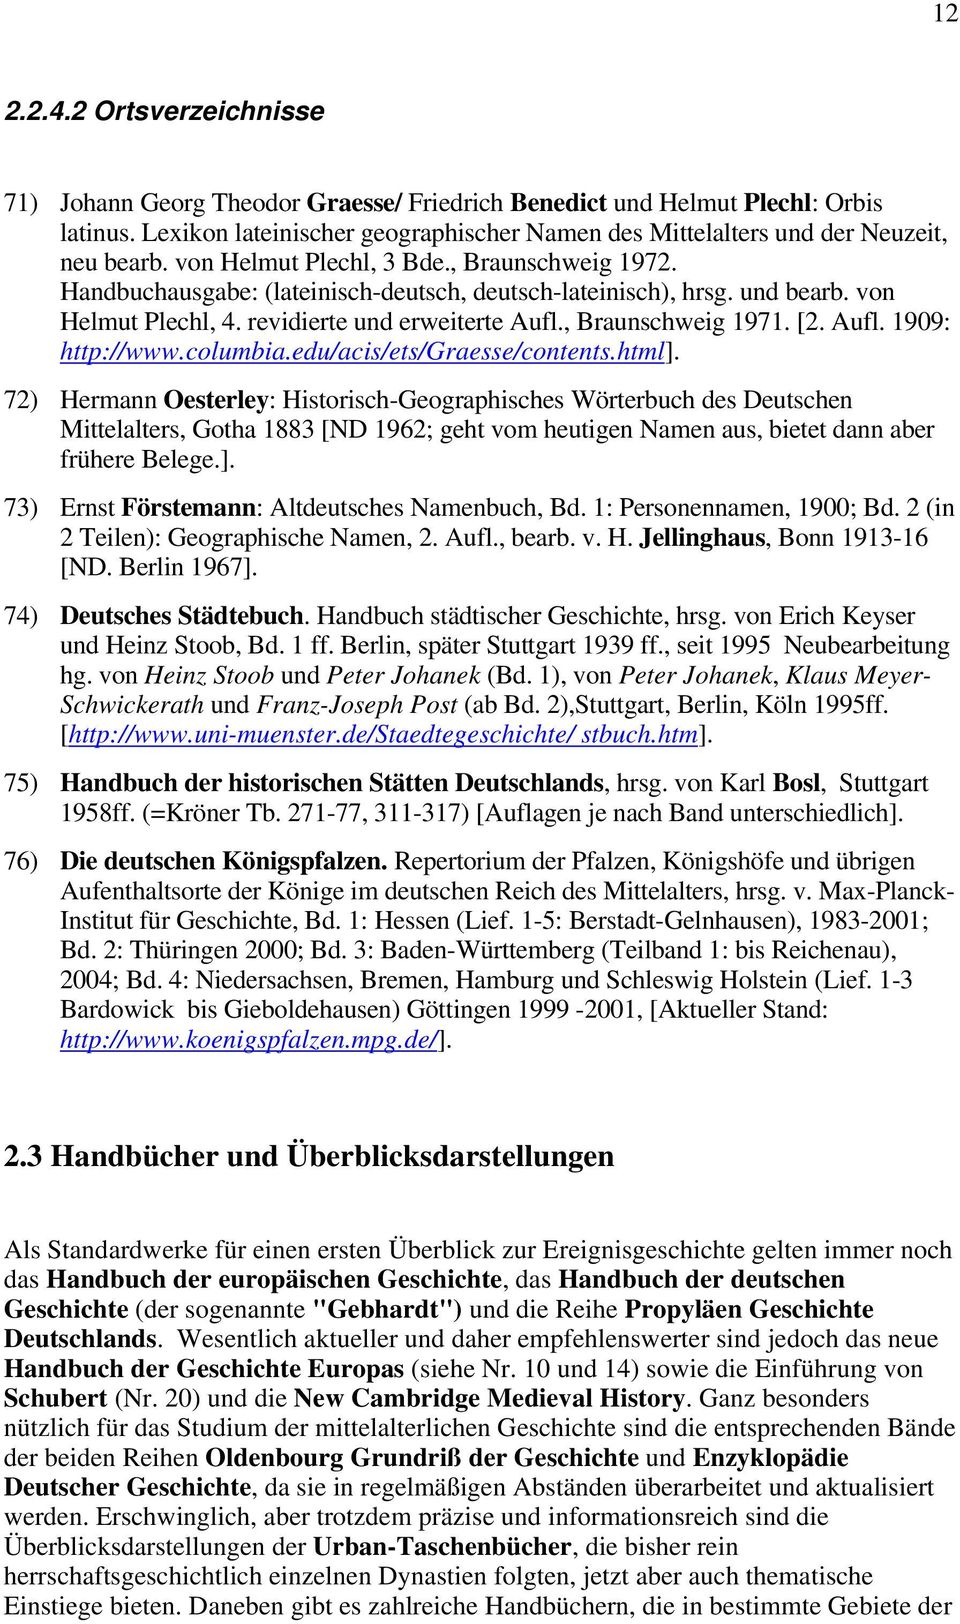 und bearb. von Helmut Plechl, 4. revidierte und erweiterte Aufl., Braunschweig 1971. [2. Aufl. 1909: http://www.columbia.edu/acis/ets/graesse/contents.html].